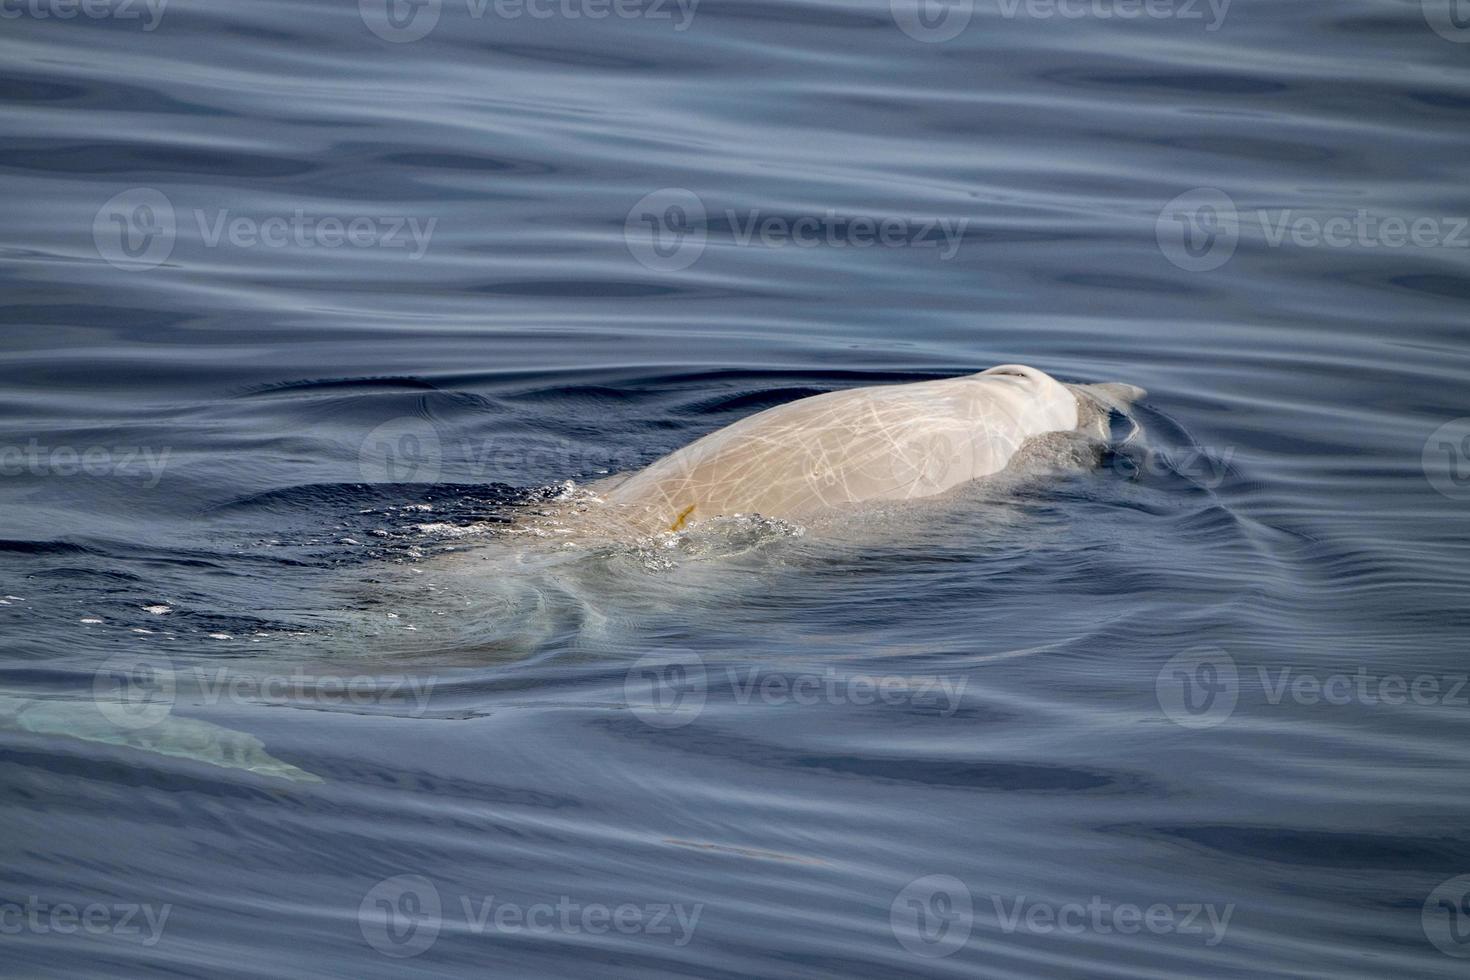 ballena picuda cuvier bajo el agua cerca de la superficie del mar foto